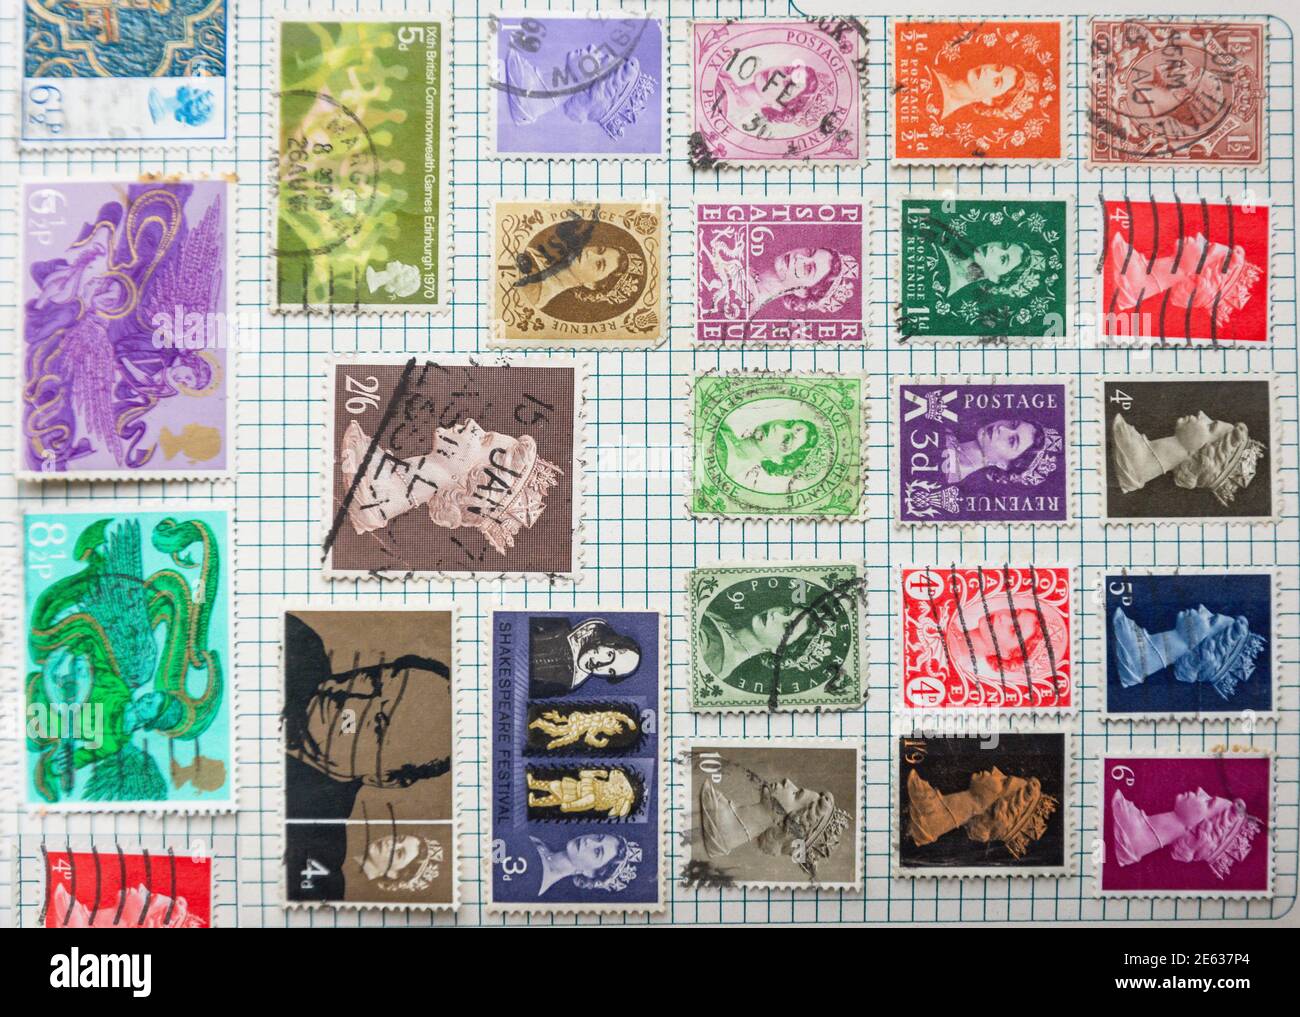 Gran Bretagna francobollo collection in album, Greater London, England, United Kingdom Foto Stock